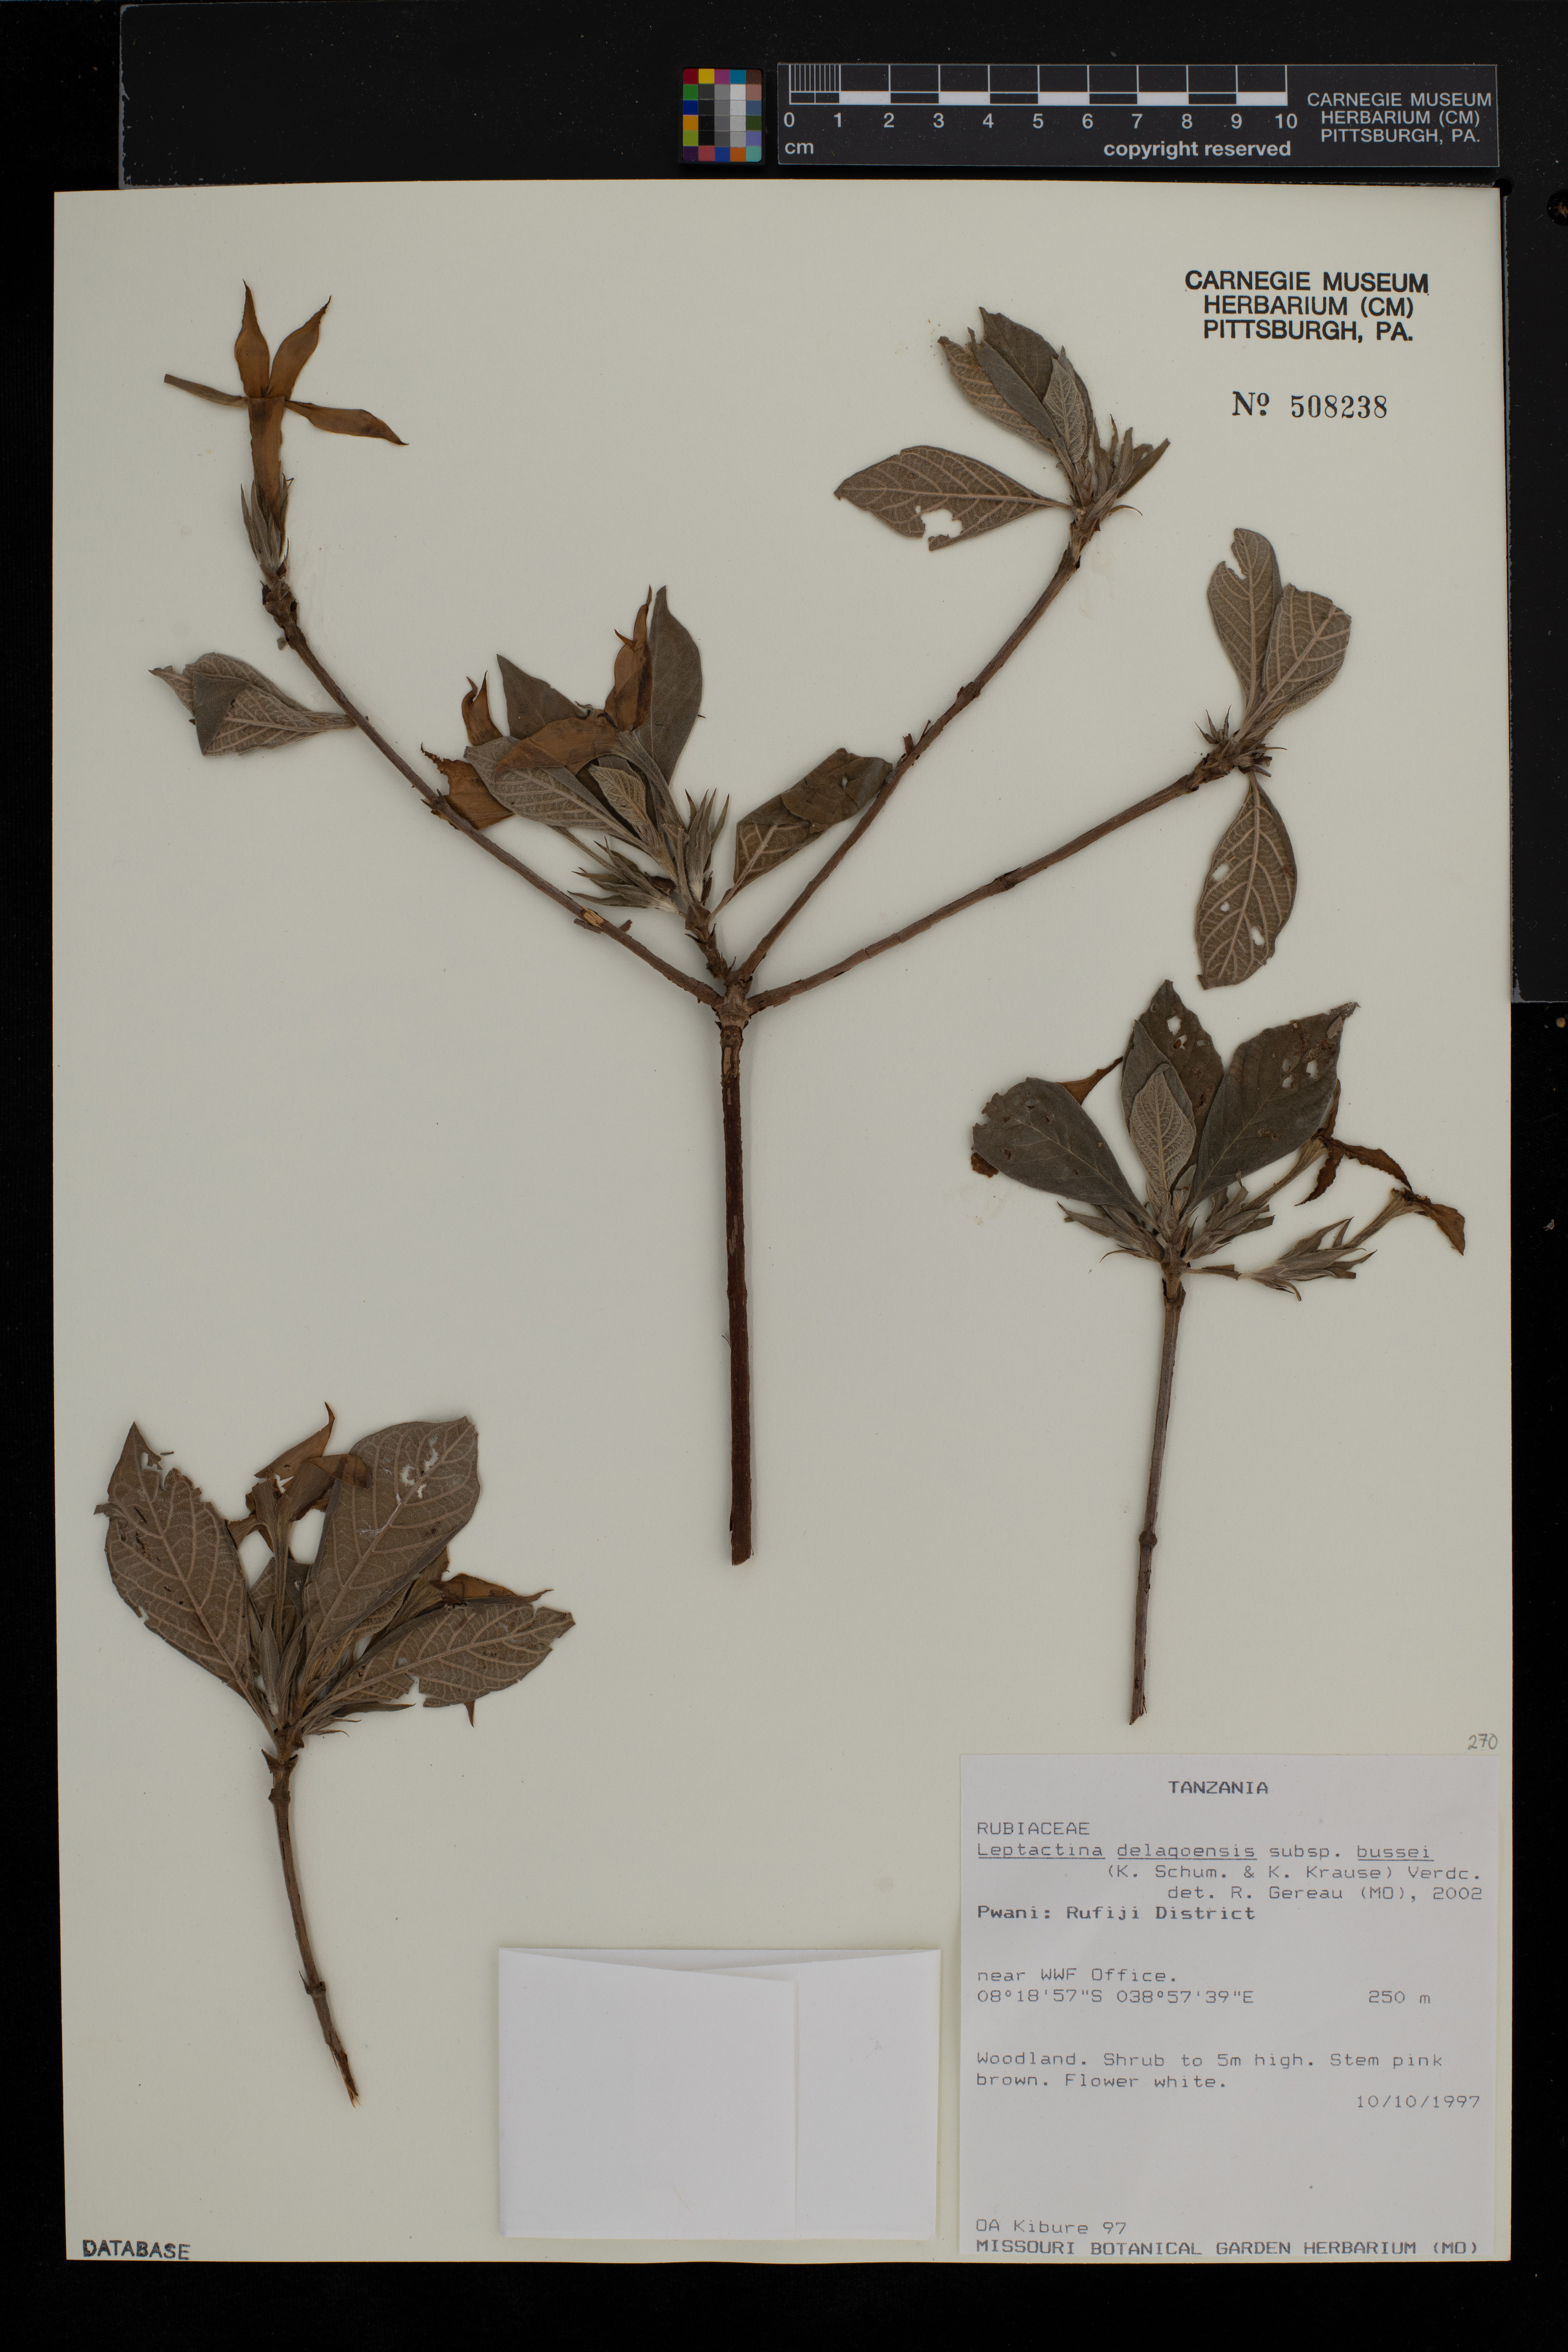 Leptactina delagoensis subsp. bussei image